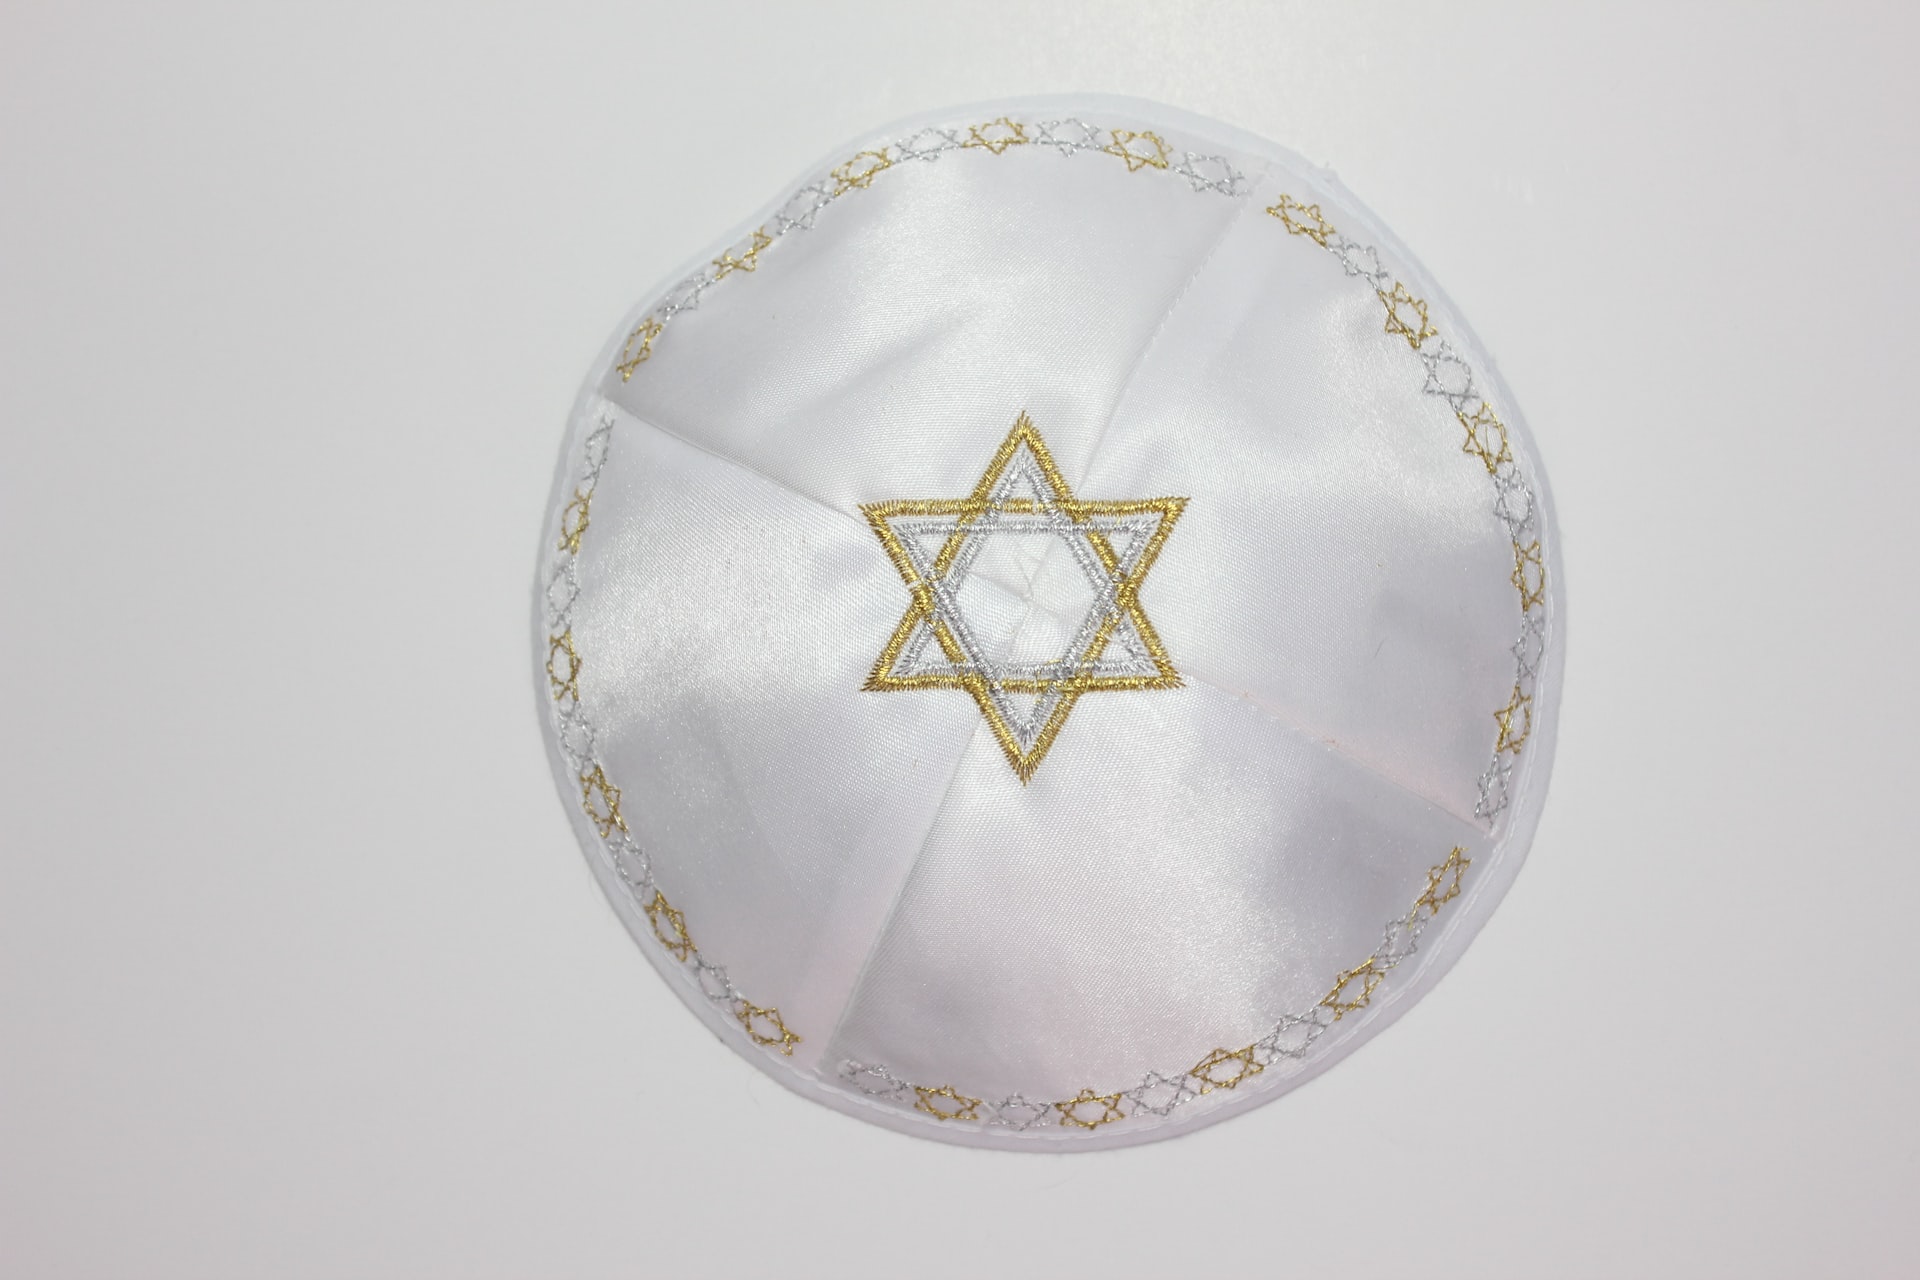 White kippah for Yom Kippur / Rosh Hashanah